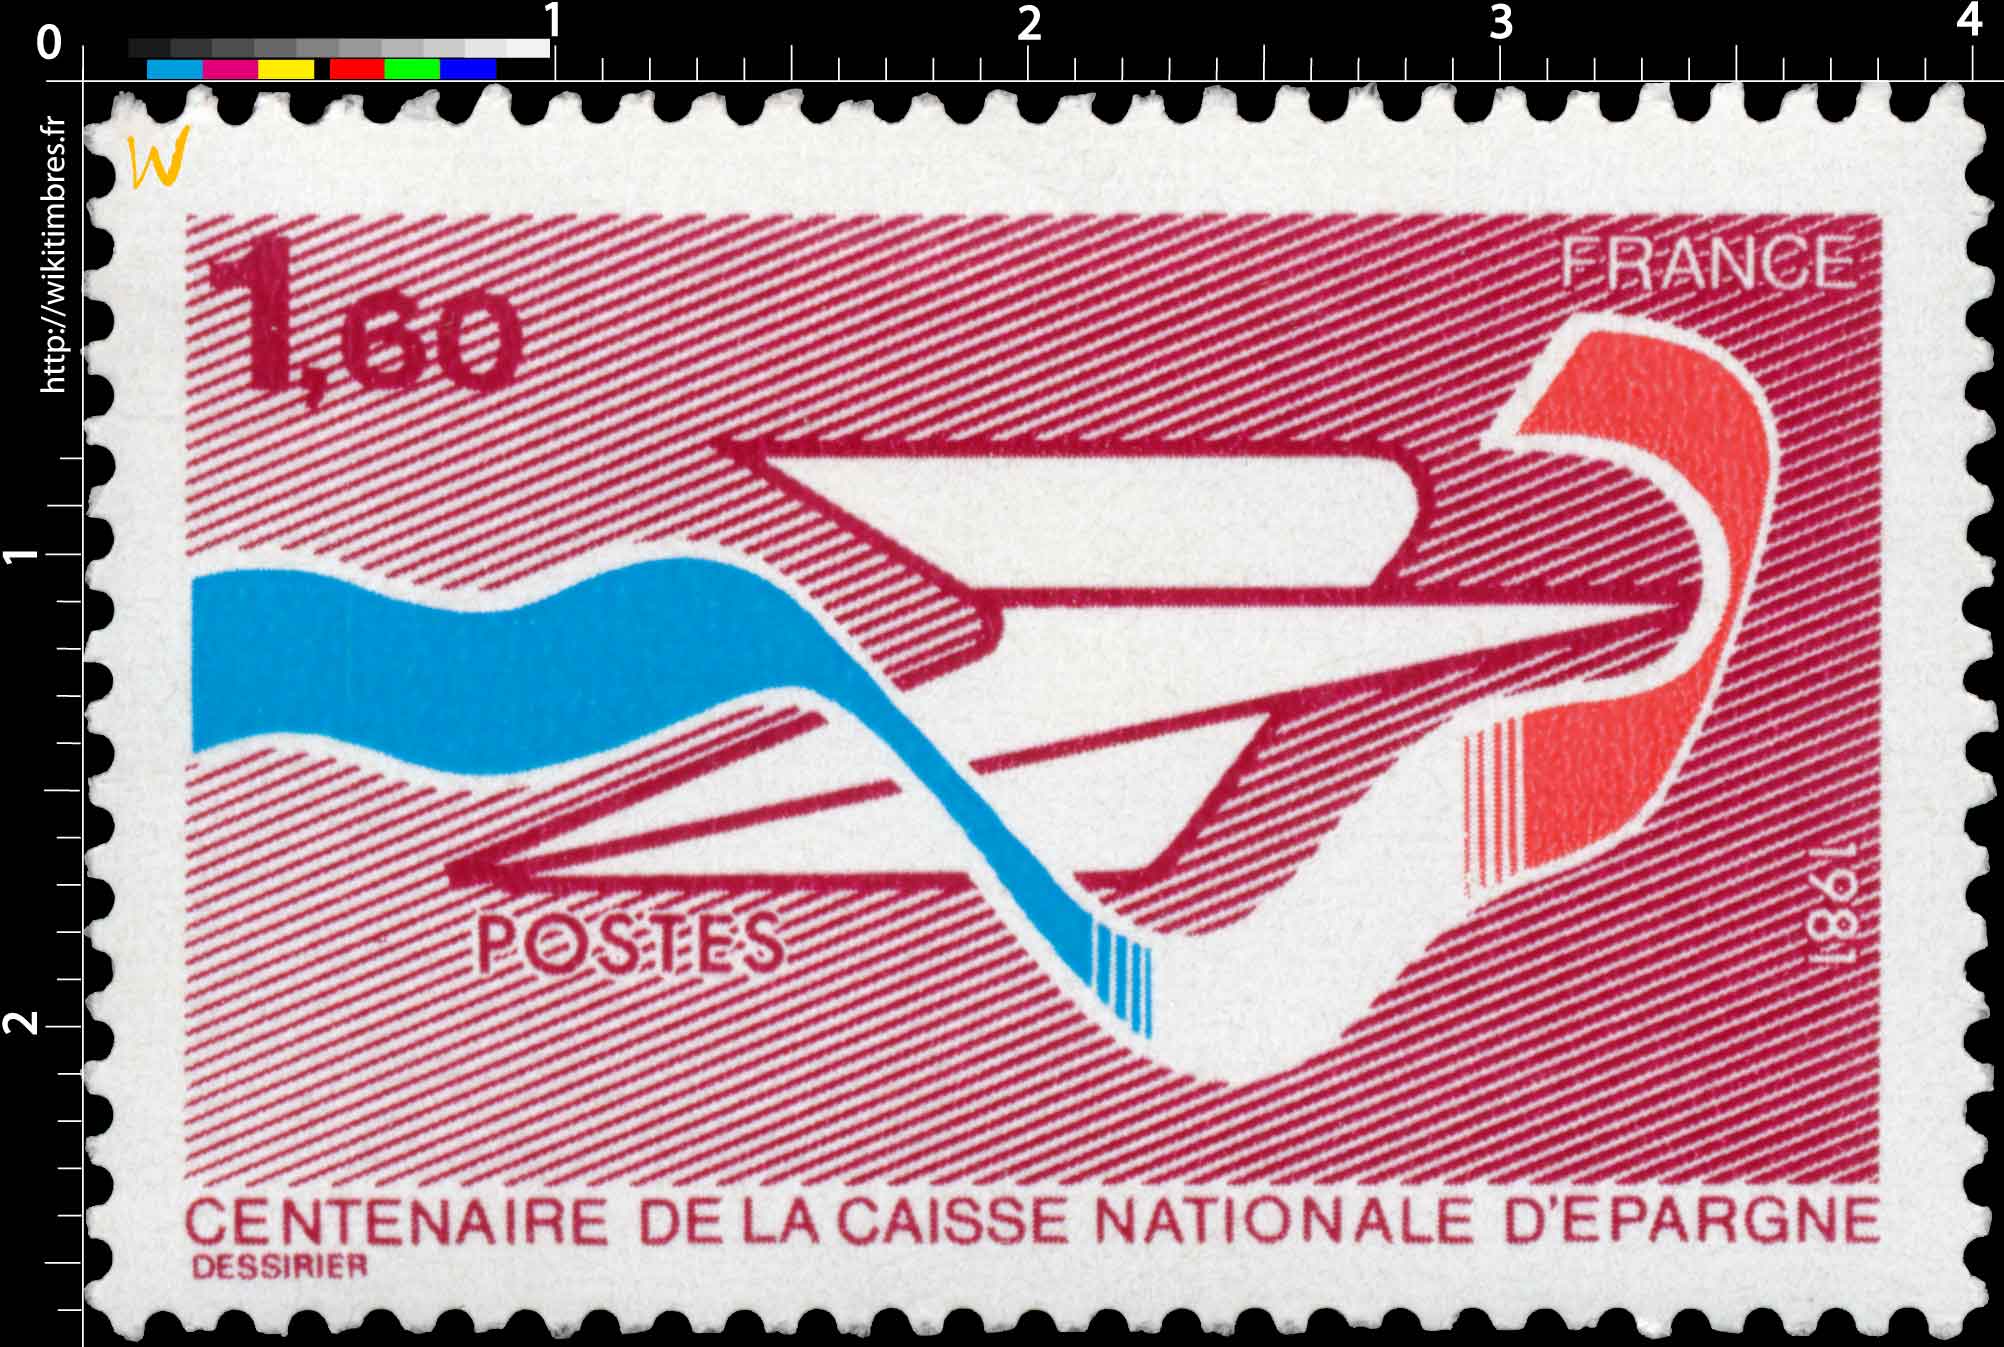 1981 CENTENAIRE DE LA CAISSE NATIONALE D'ÉPARGNE